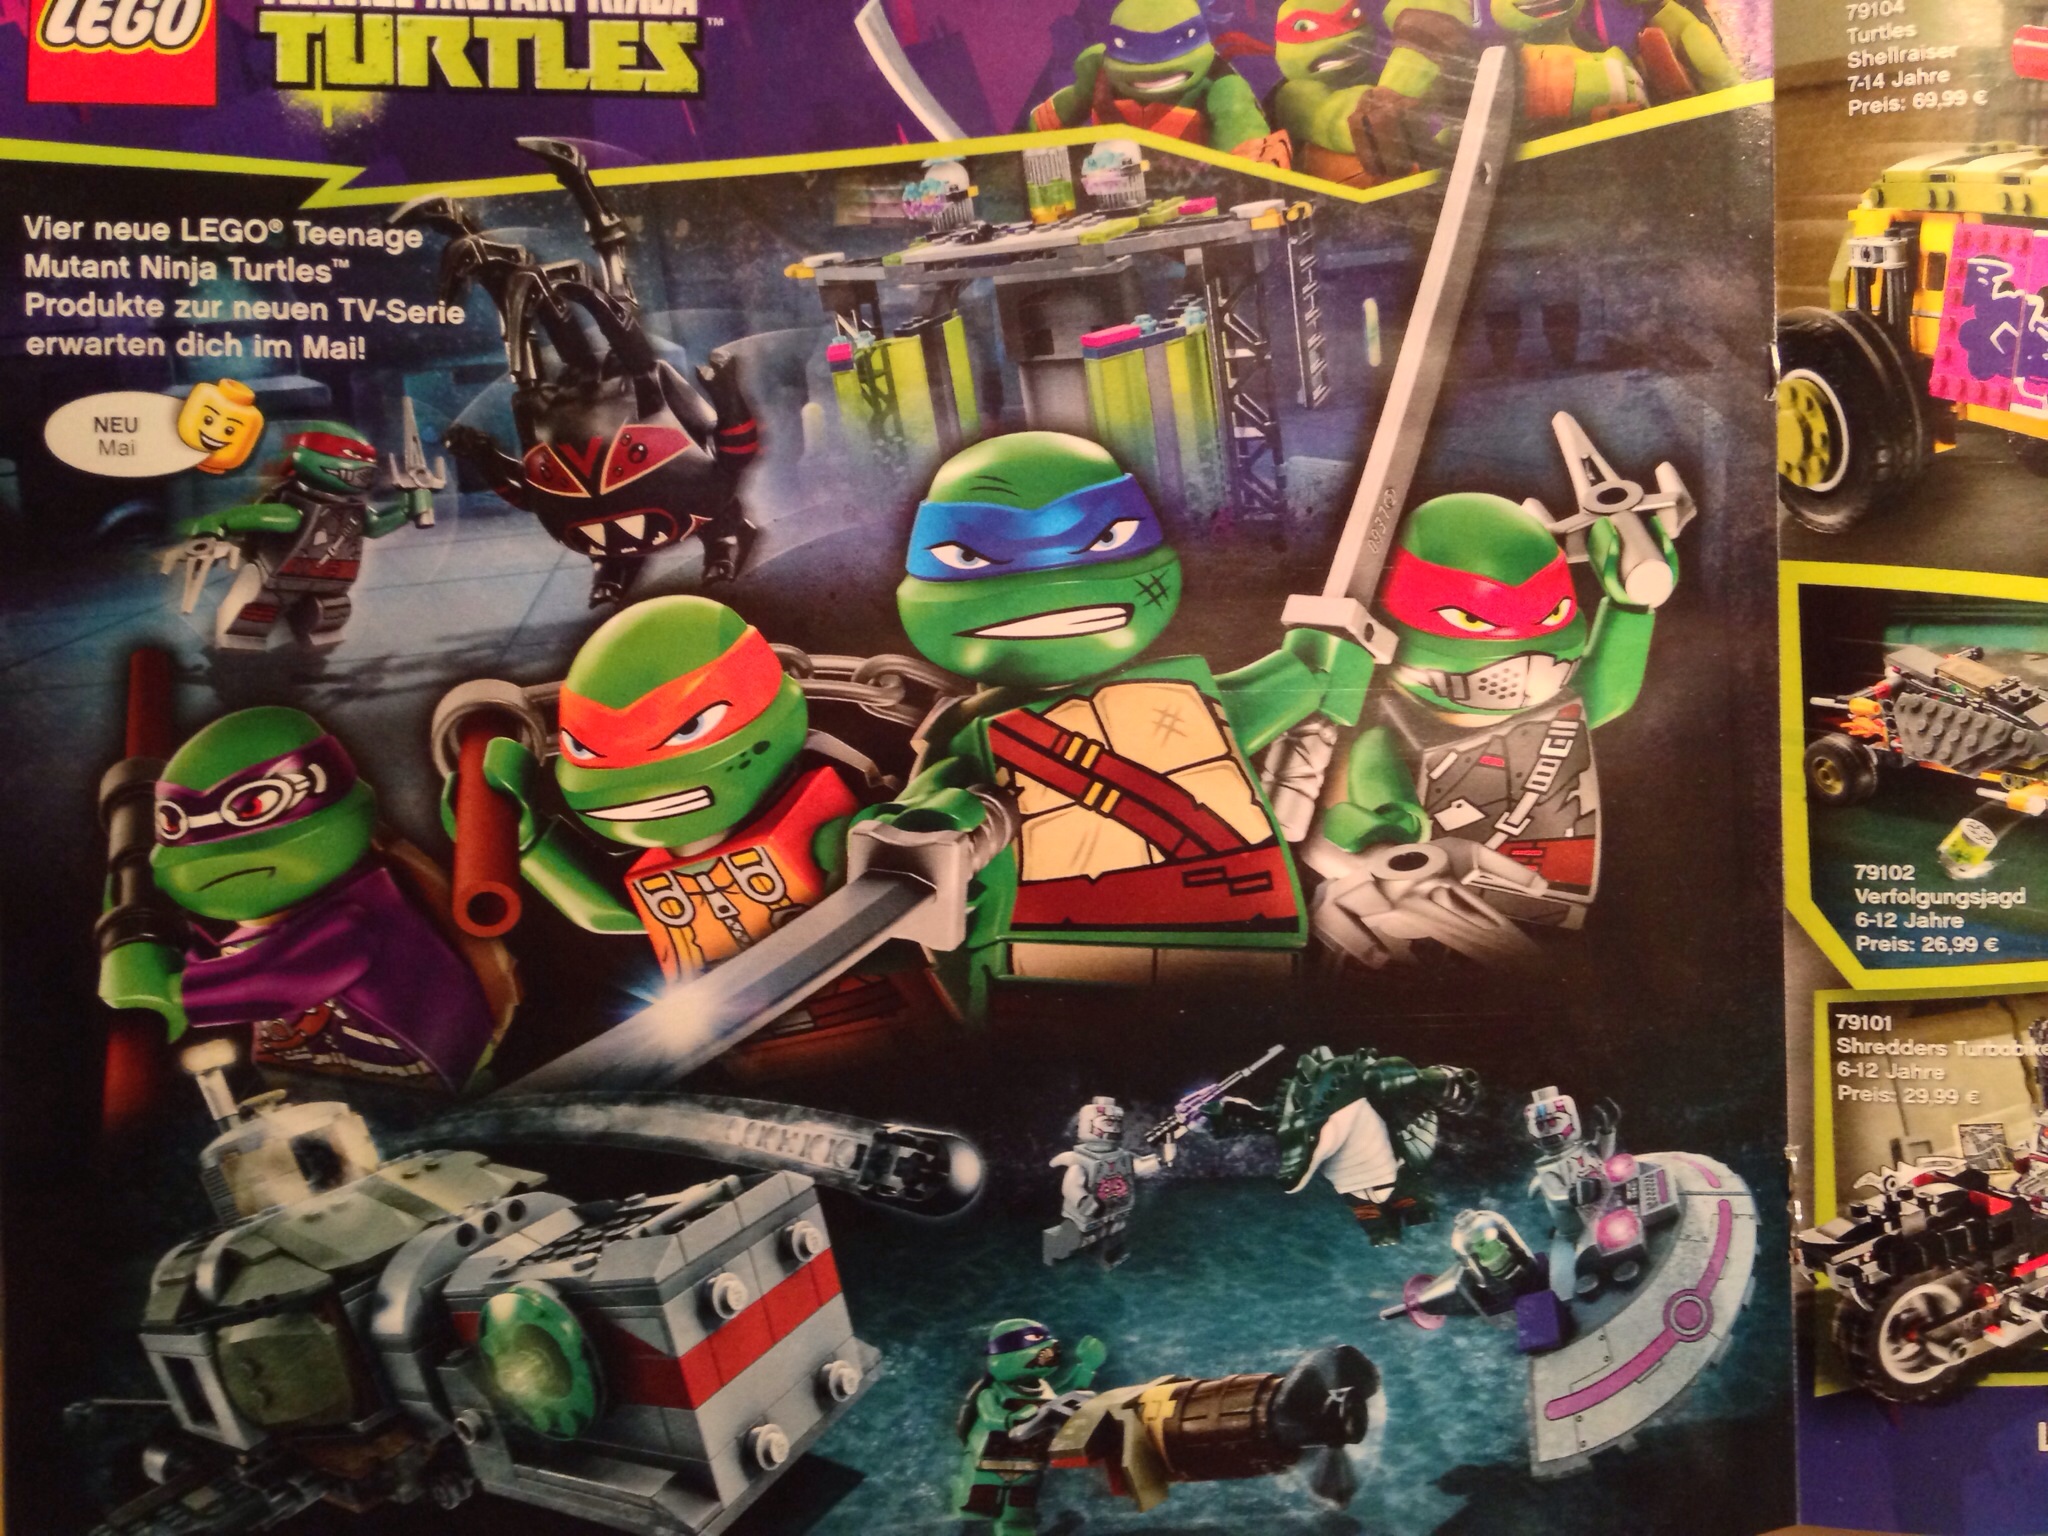 LEGO-Teenage-Mutant-Ninja-Turtles-2014-Sets-Pre.jpg